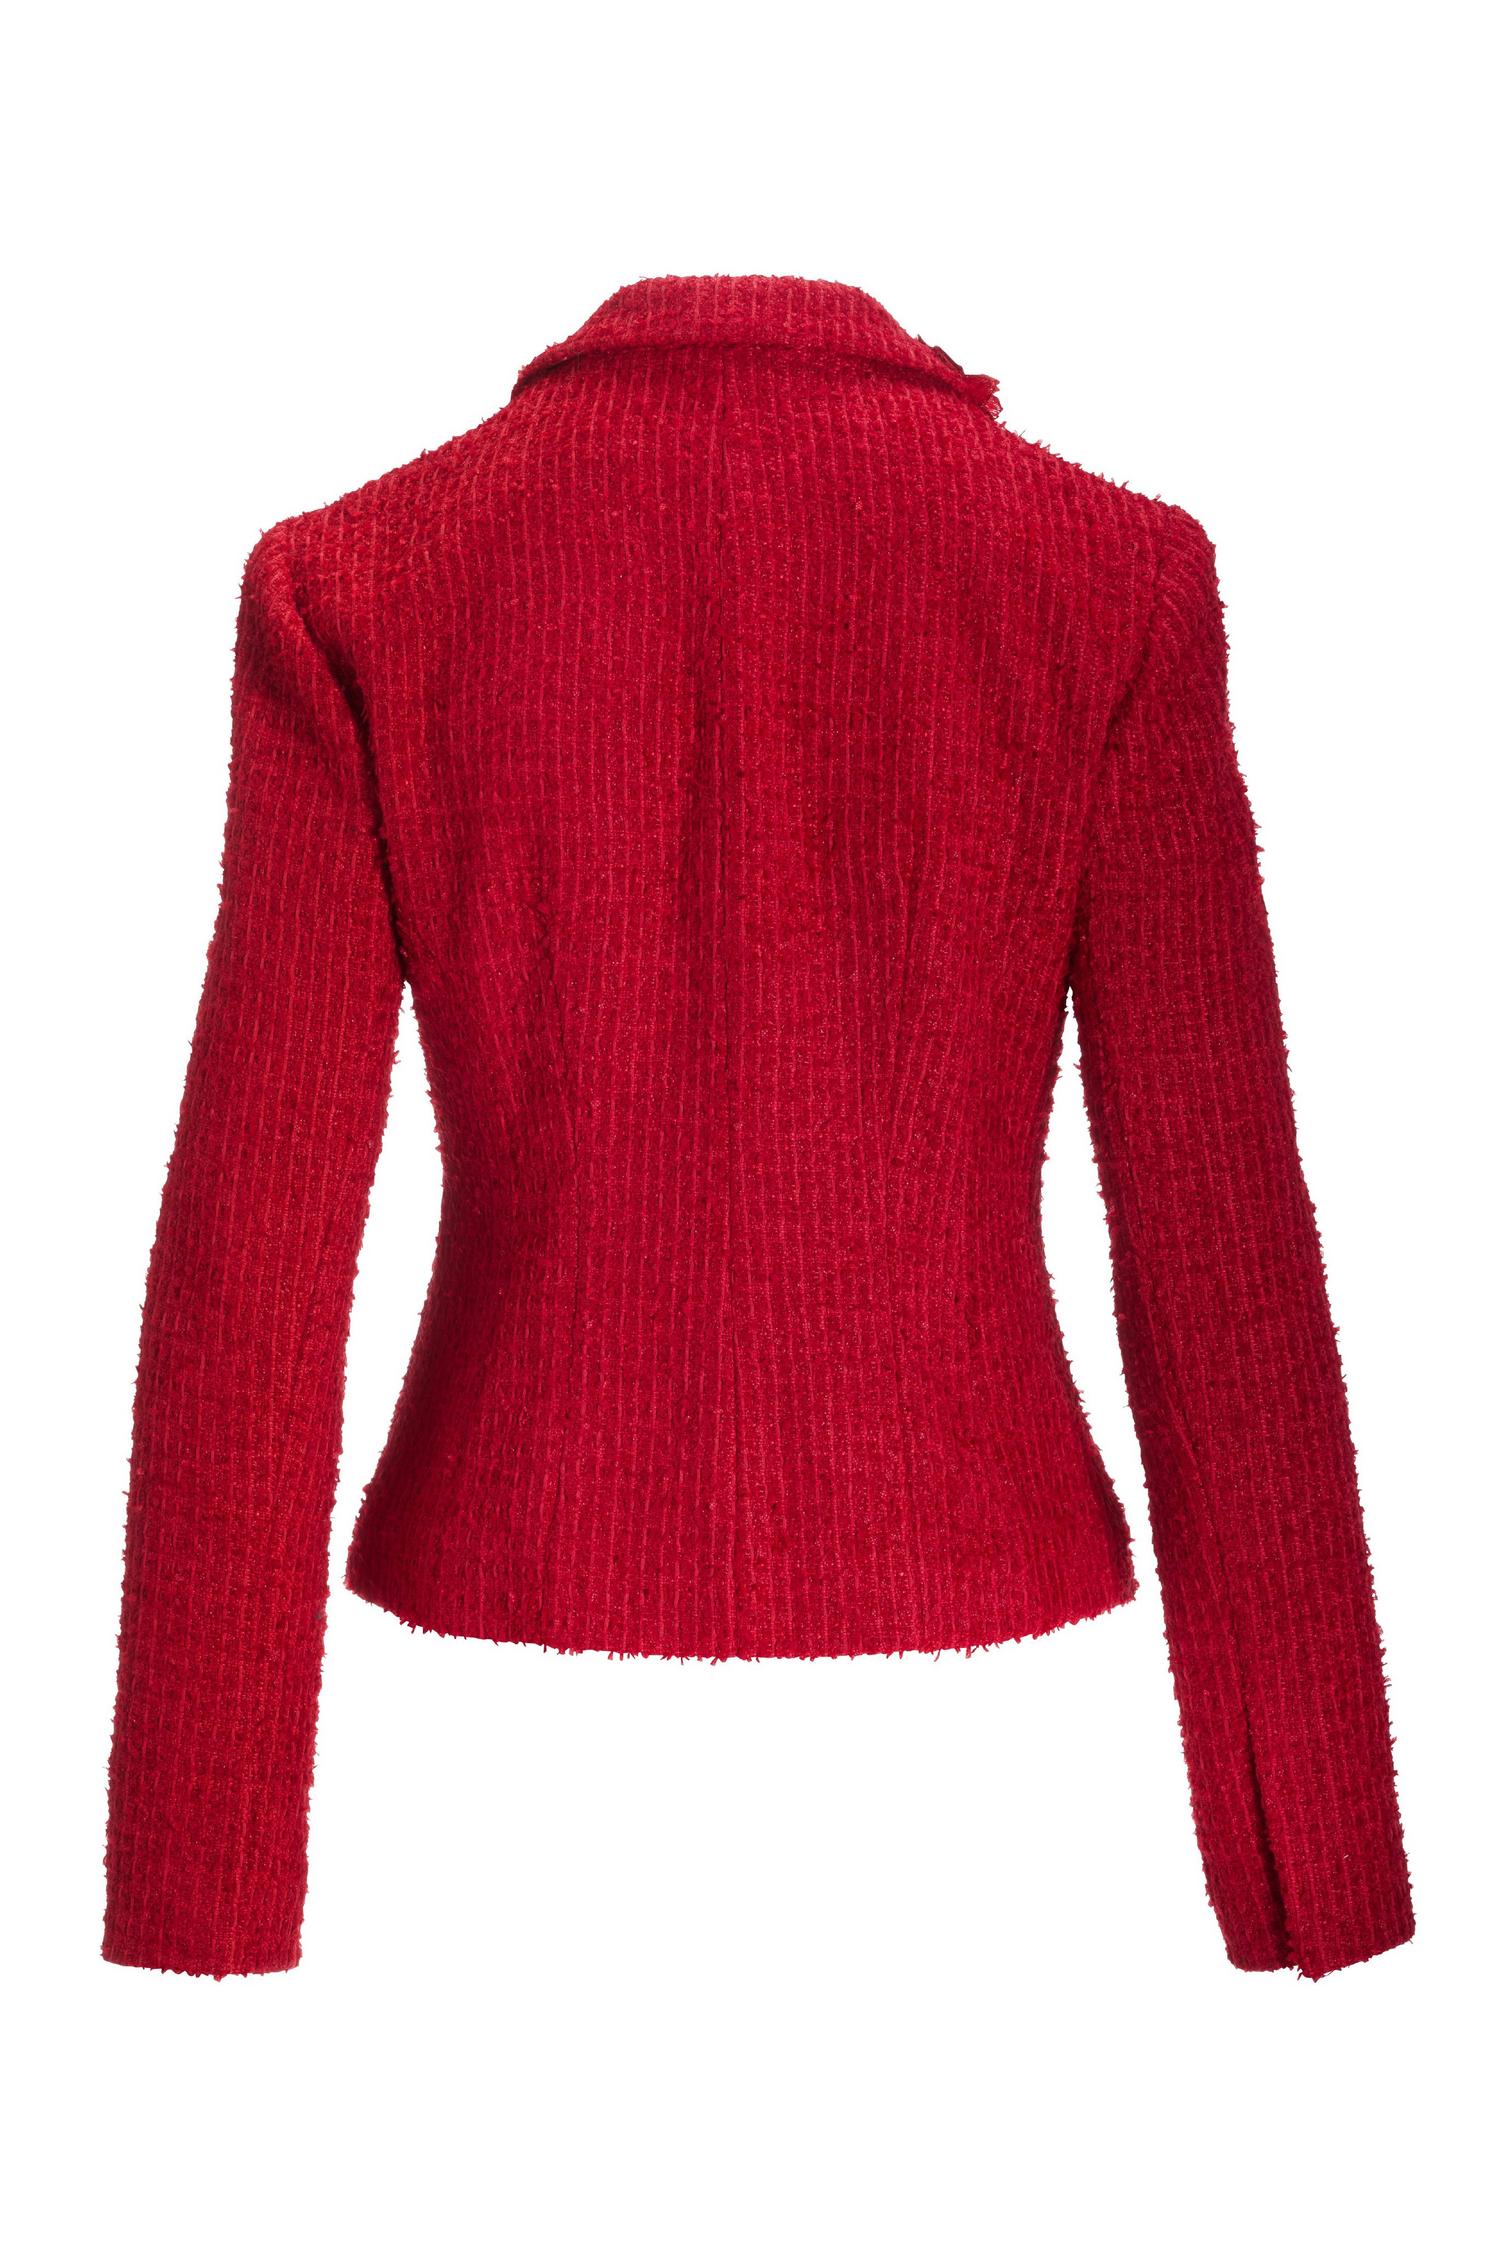 3D Floral Applique Tweed Jacket - Jester Red